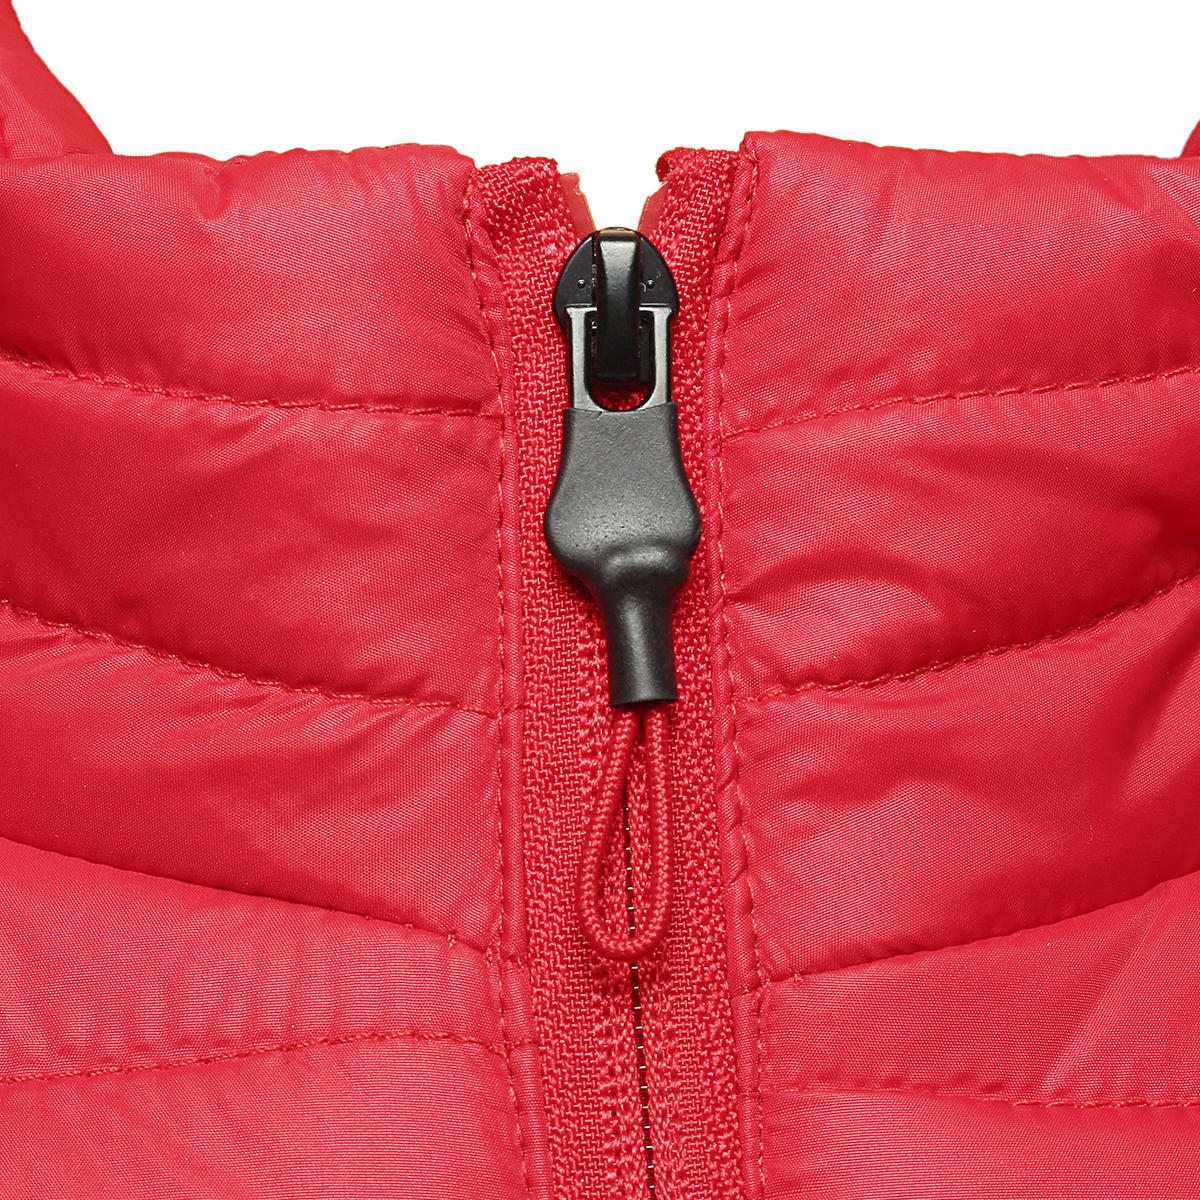 Red Unisex USB Heating Vest Smart Winter Body Warmer Outdoor Racing Jacket Heater